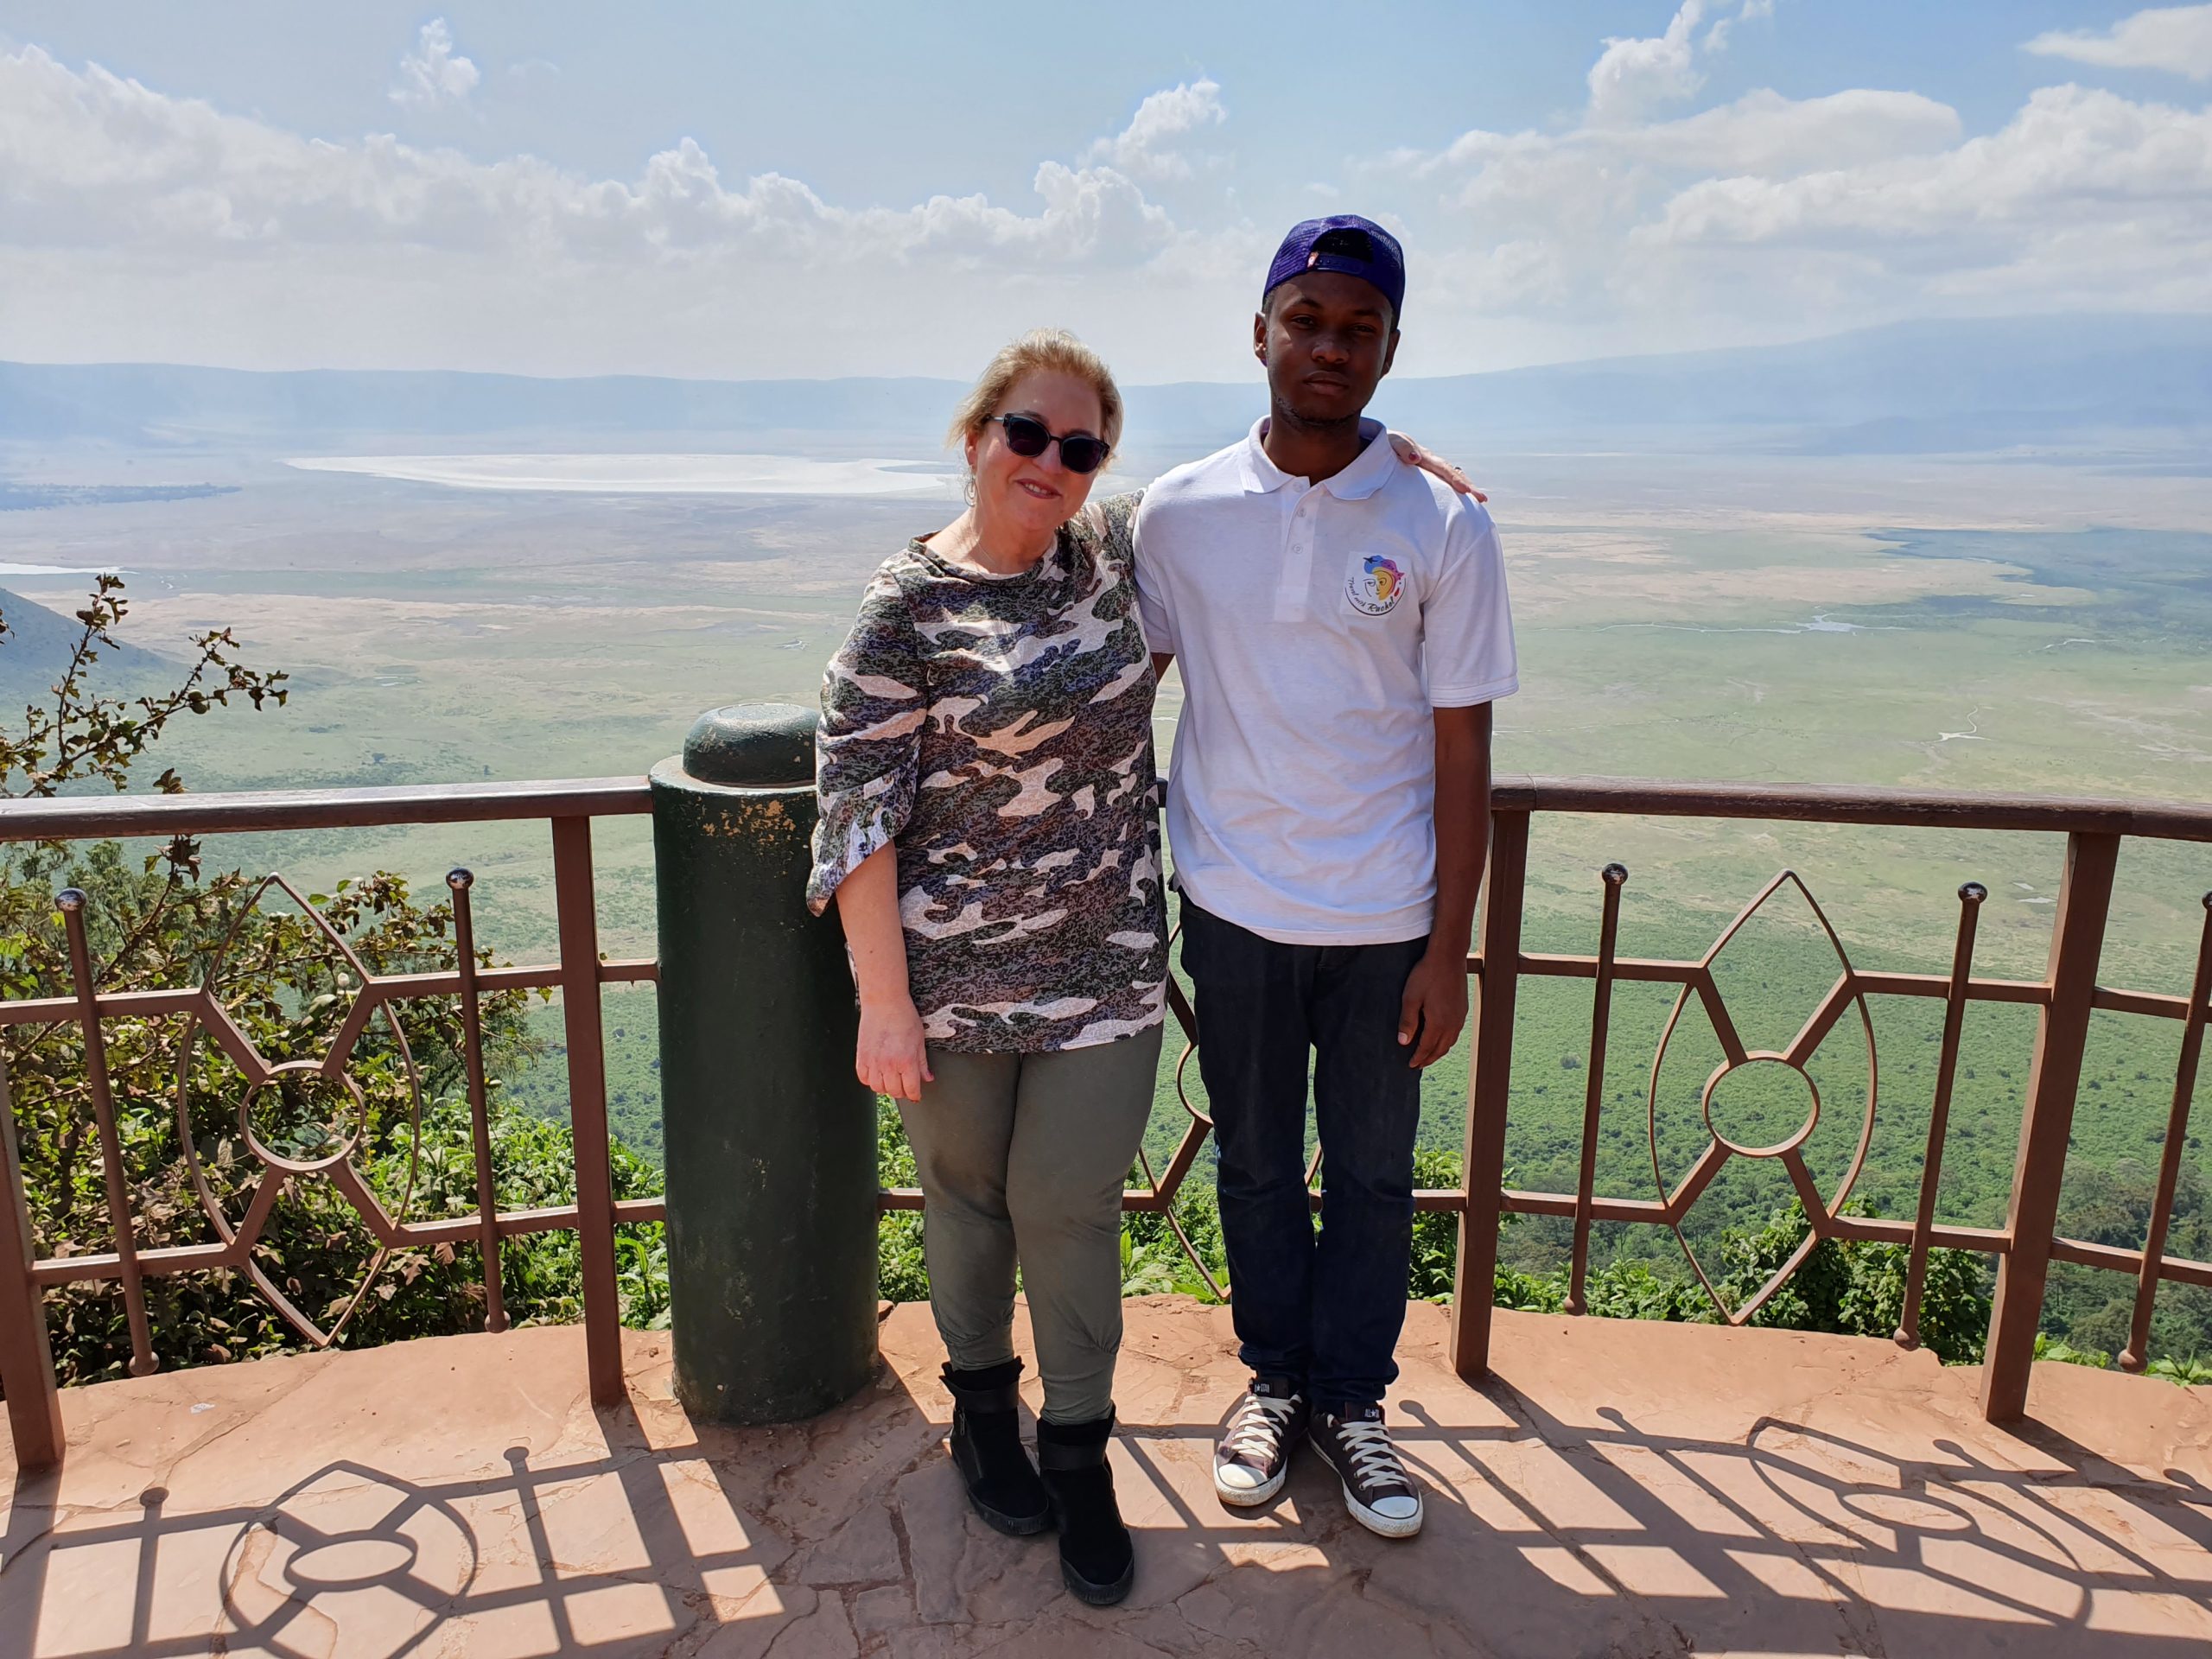 נקודת התצפית המפורסמת על מכתש Ngorongoro- באפריקה